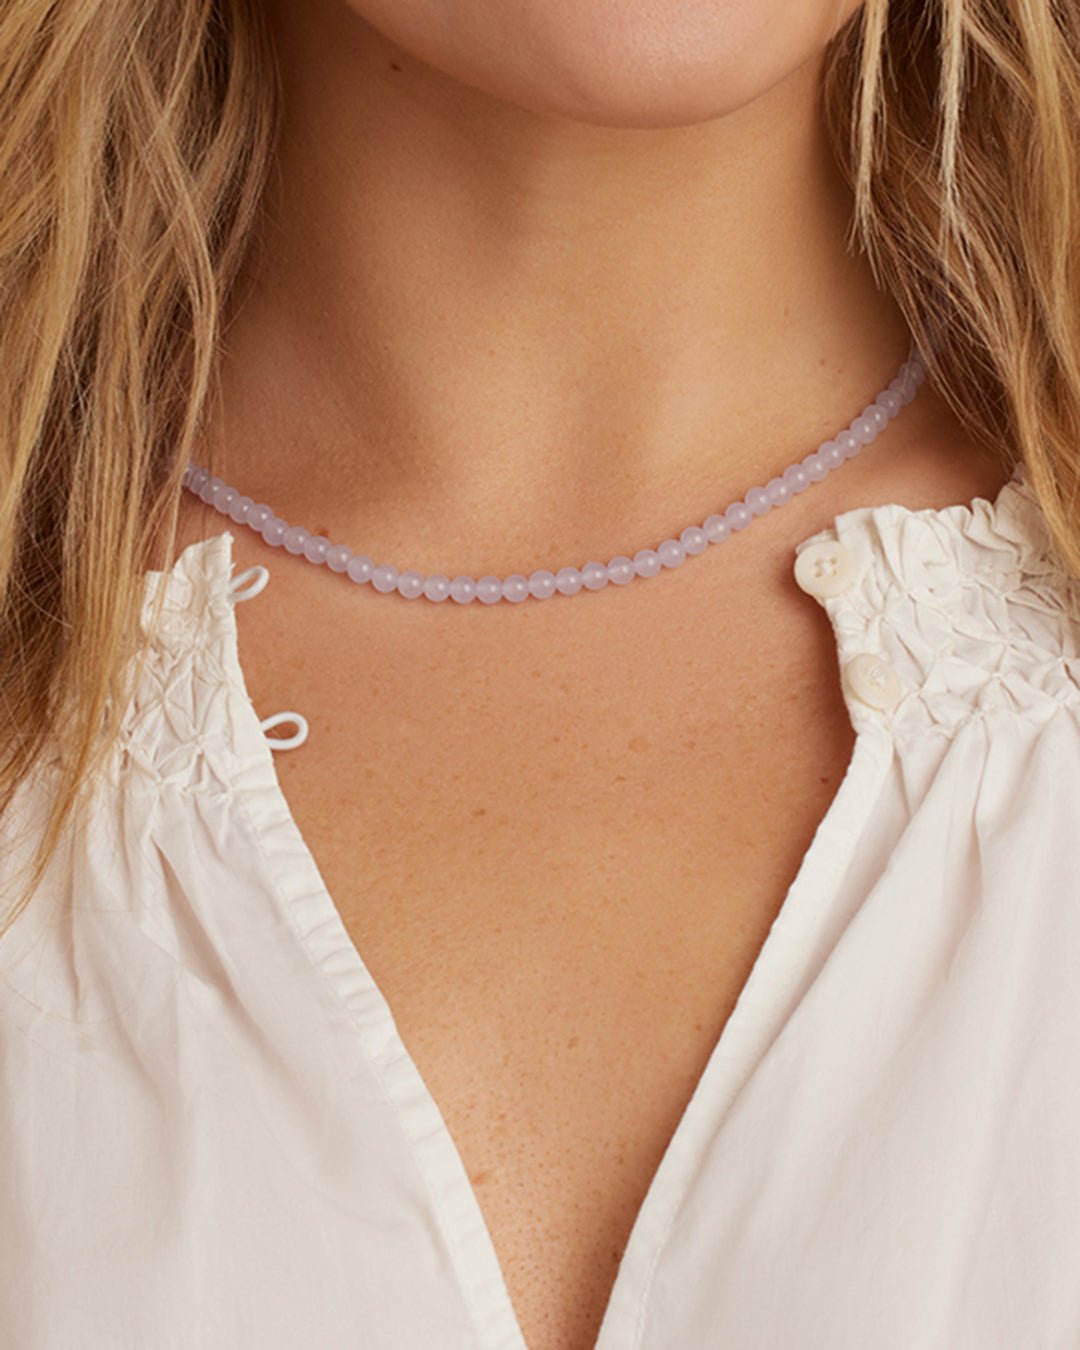 Carter Gemstone Necklace || option::Gold Plated, Lavender Jade